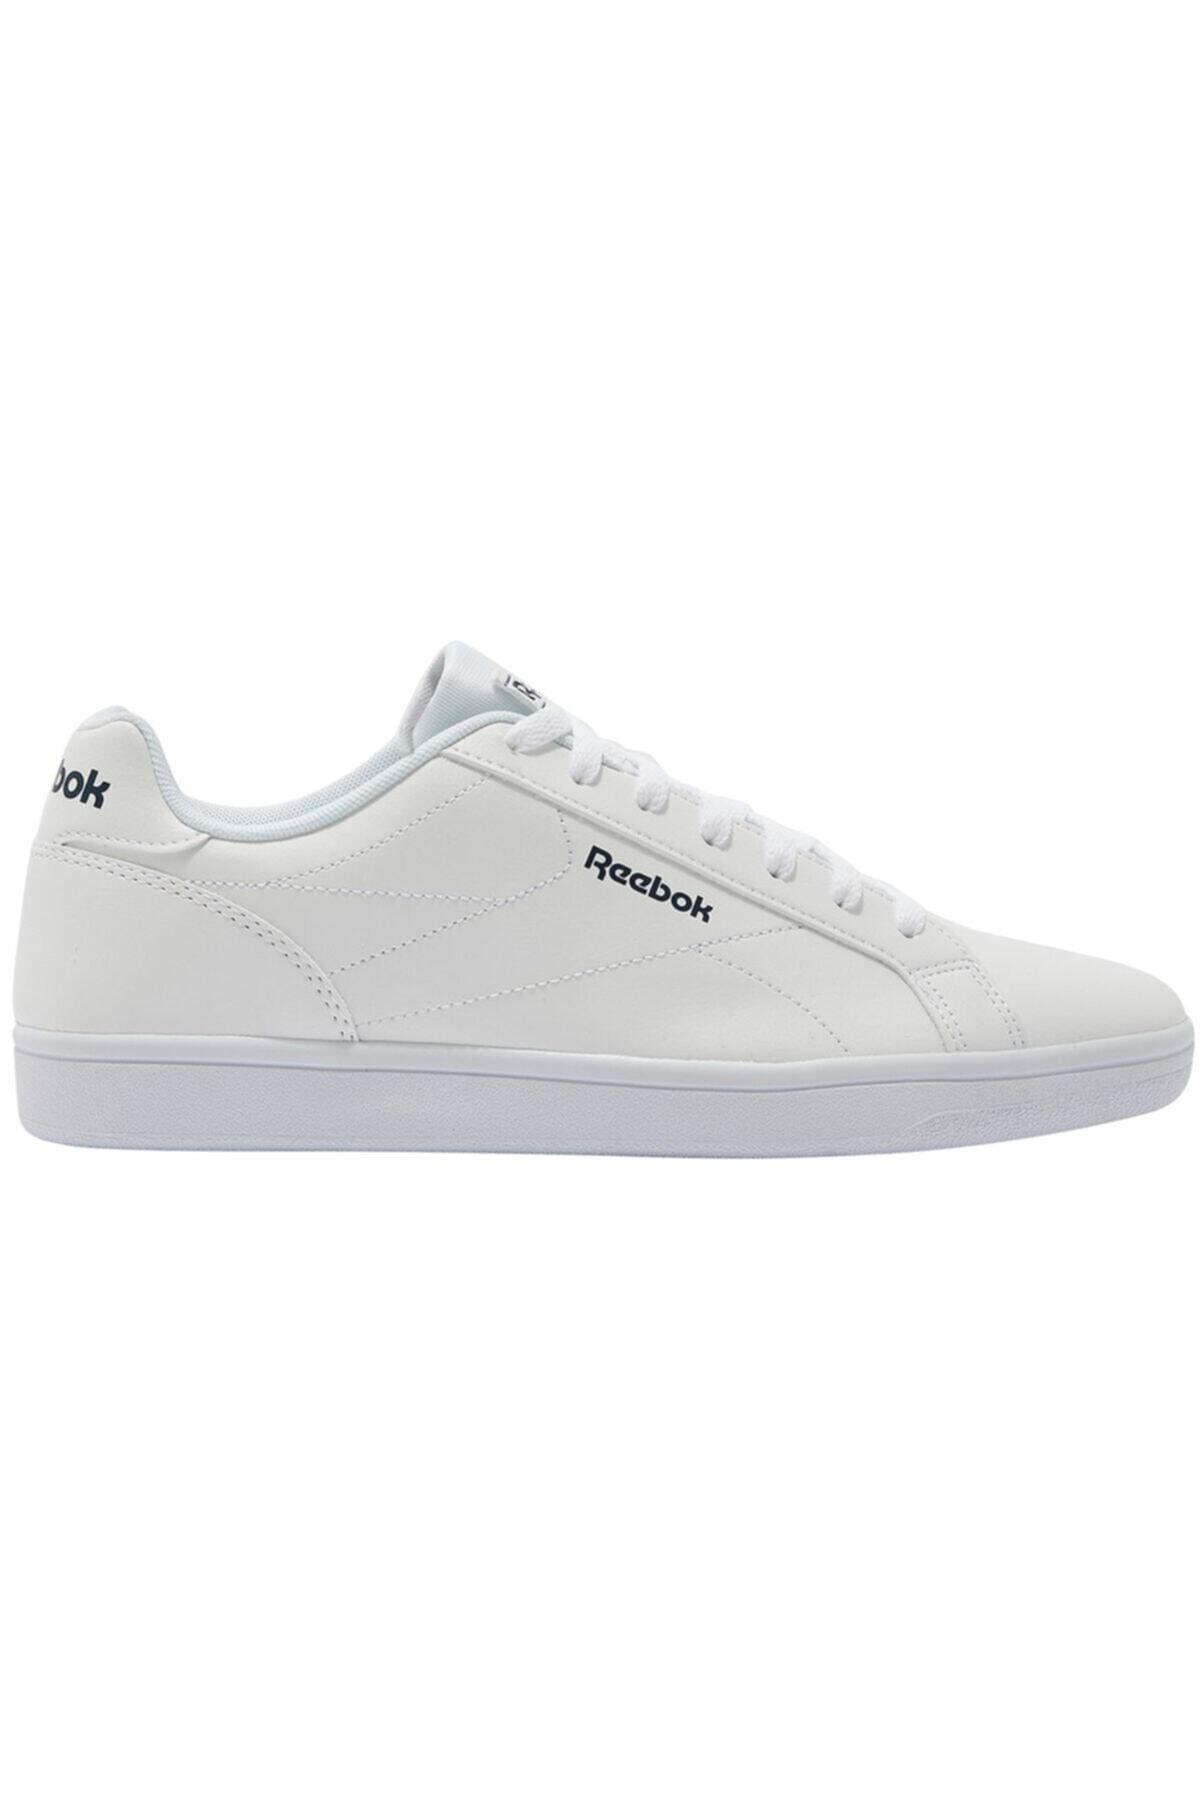 Reebok ROYAL COMPLE Beyaz Erkek Sneaker Ayakkabı 100479507